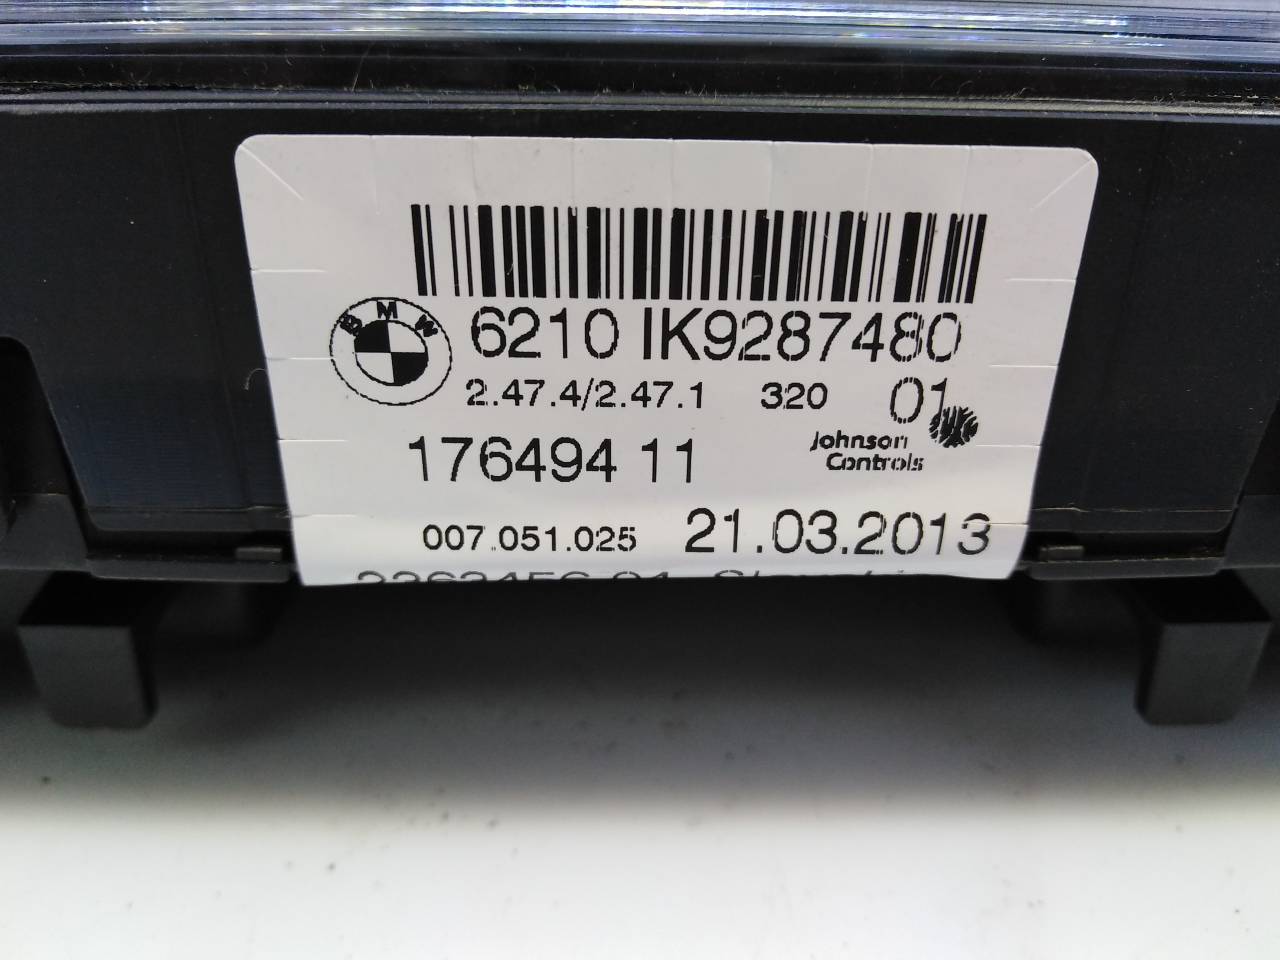 BMW 3 Series F30/F31 (2011-2020) Speedometer 6210IK9287480, 17649411, E3-A2-25-1 24294514